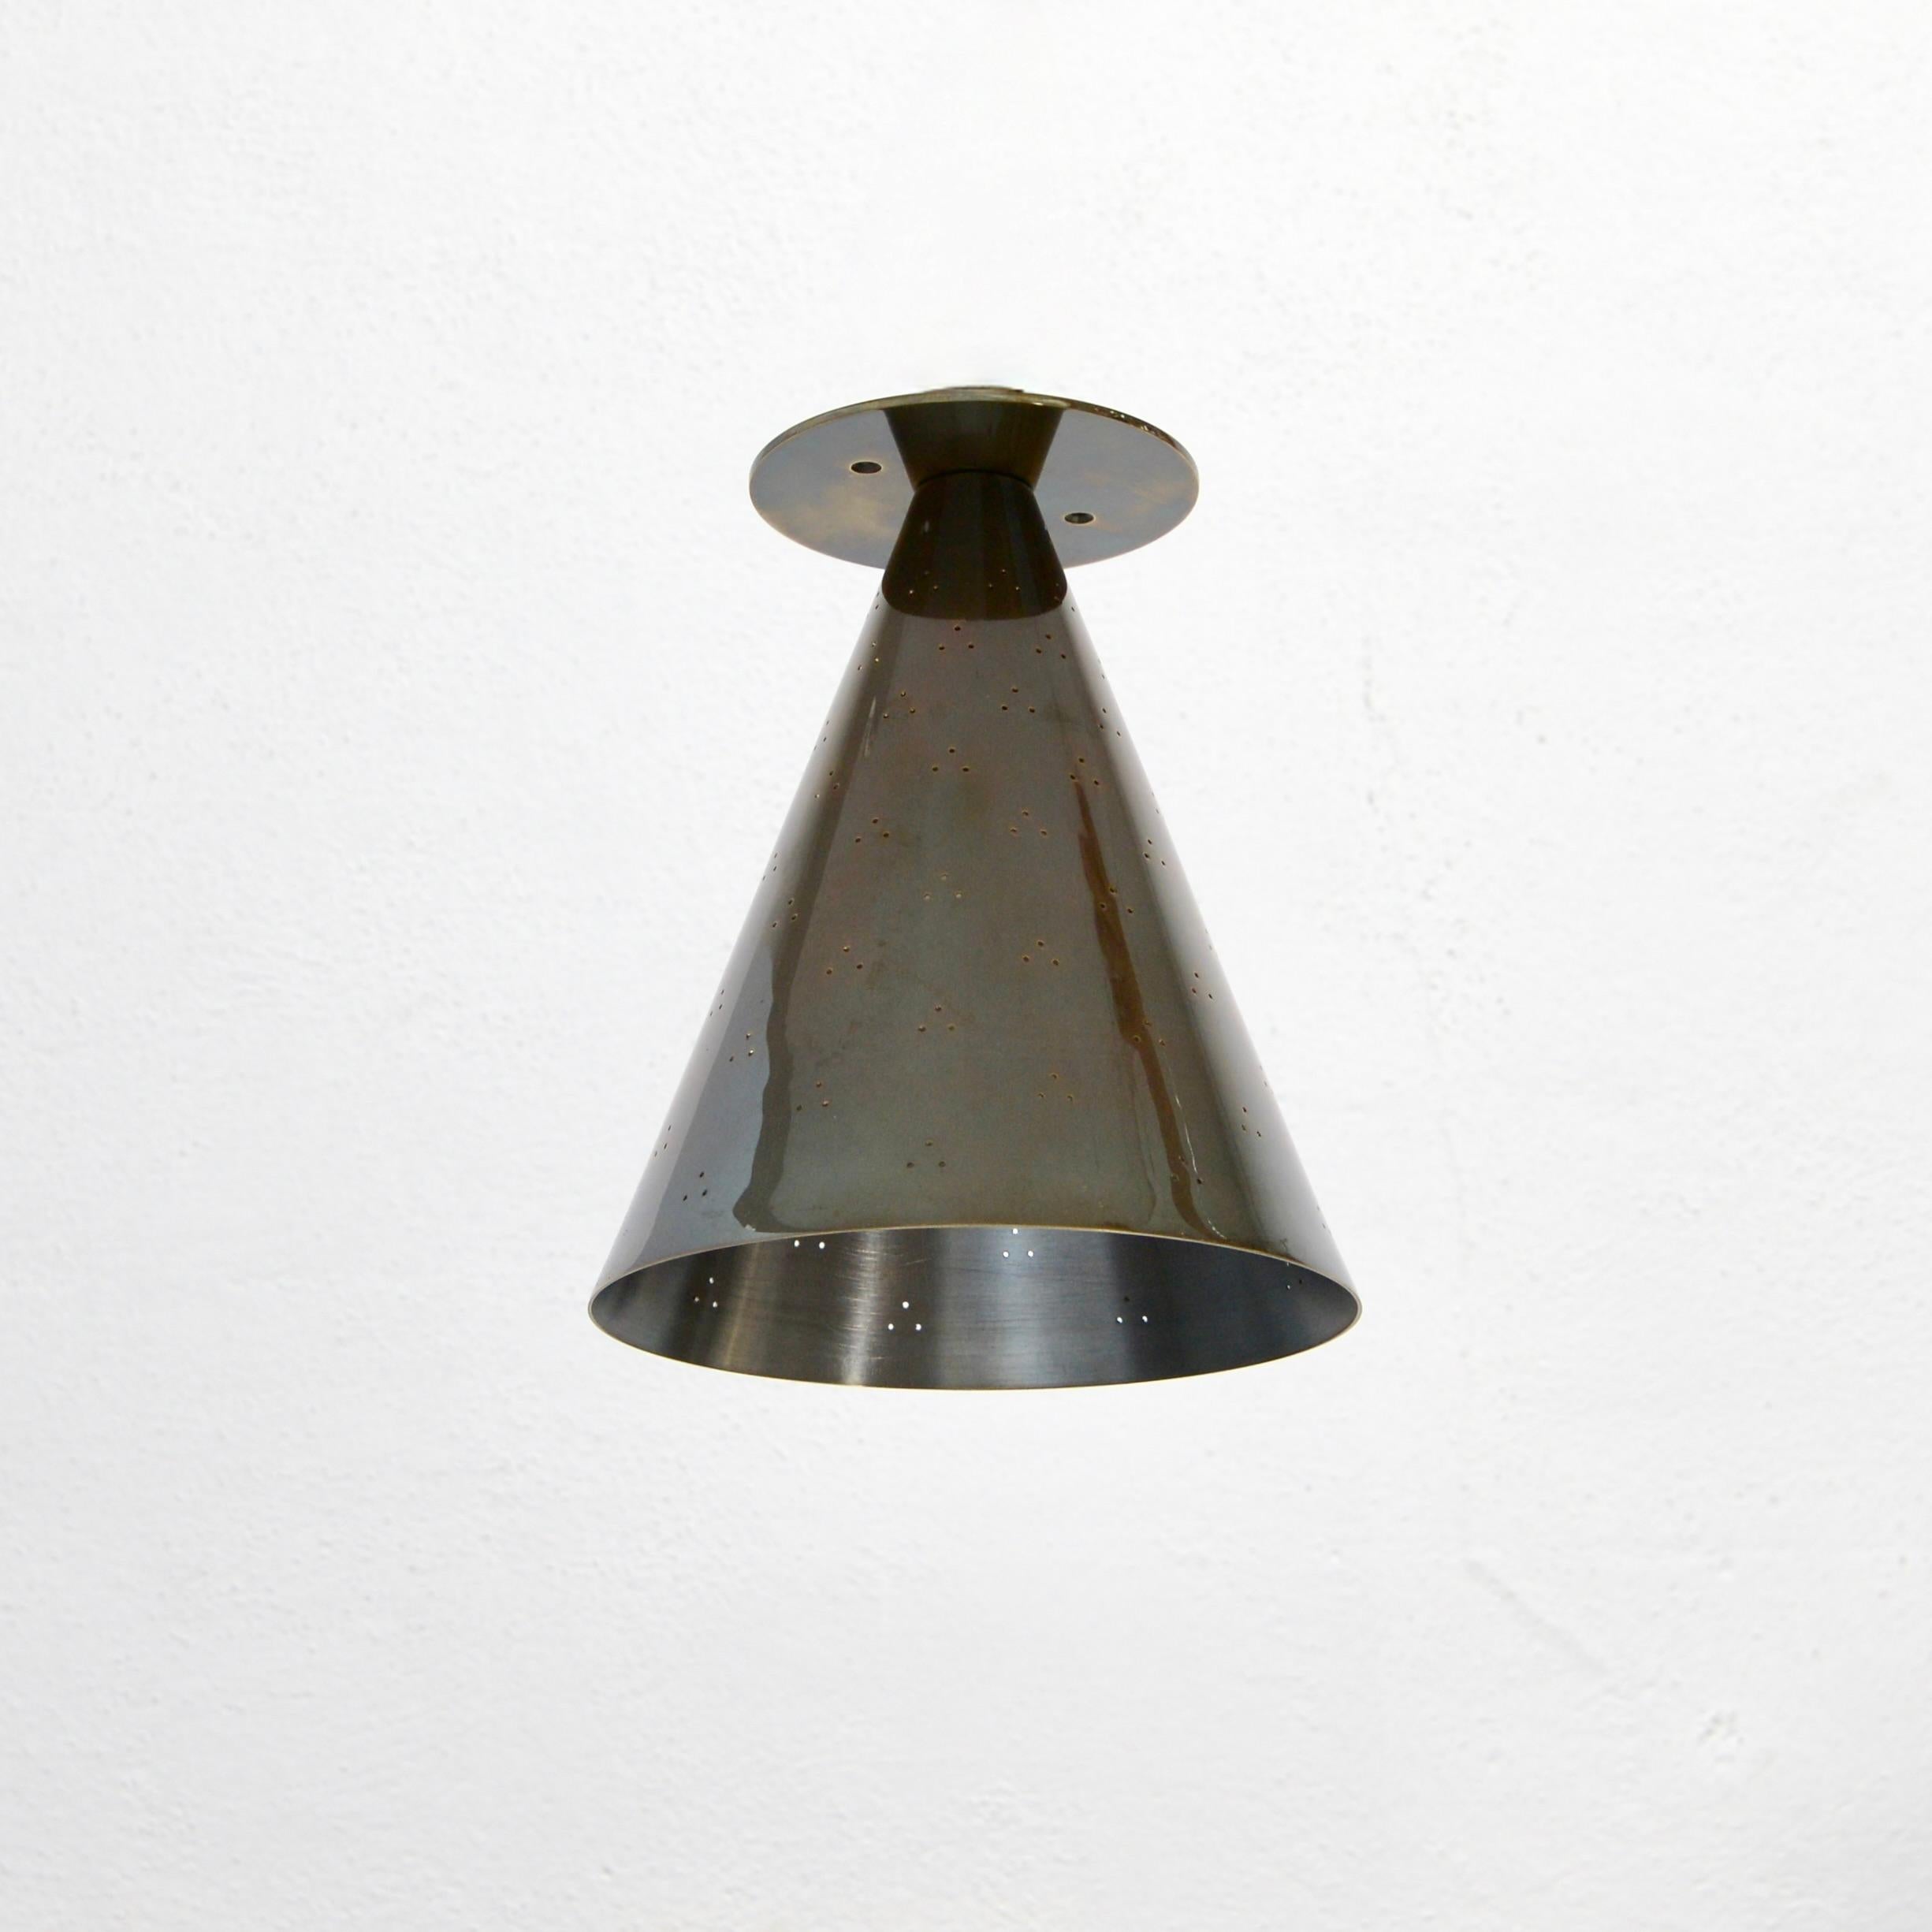 Faisant partie de la collection contemporaine de Lumfardo Luminaries, le luminaire encastré PMPT est un luminaire conique encastré dans l'esprit de Paavo Tynell de la tradition moderne scandinave. Fabriqué sur commande et réalisé en laiton patiné